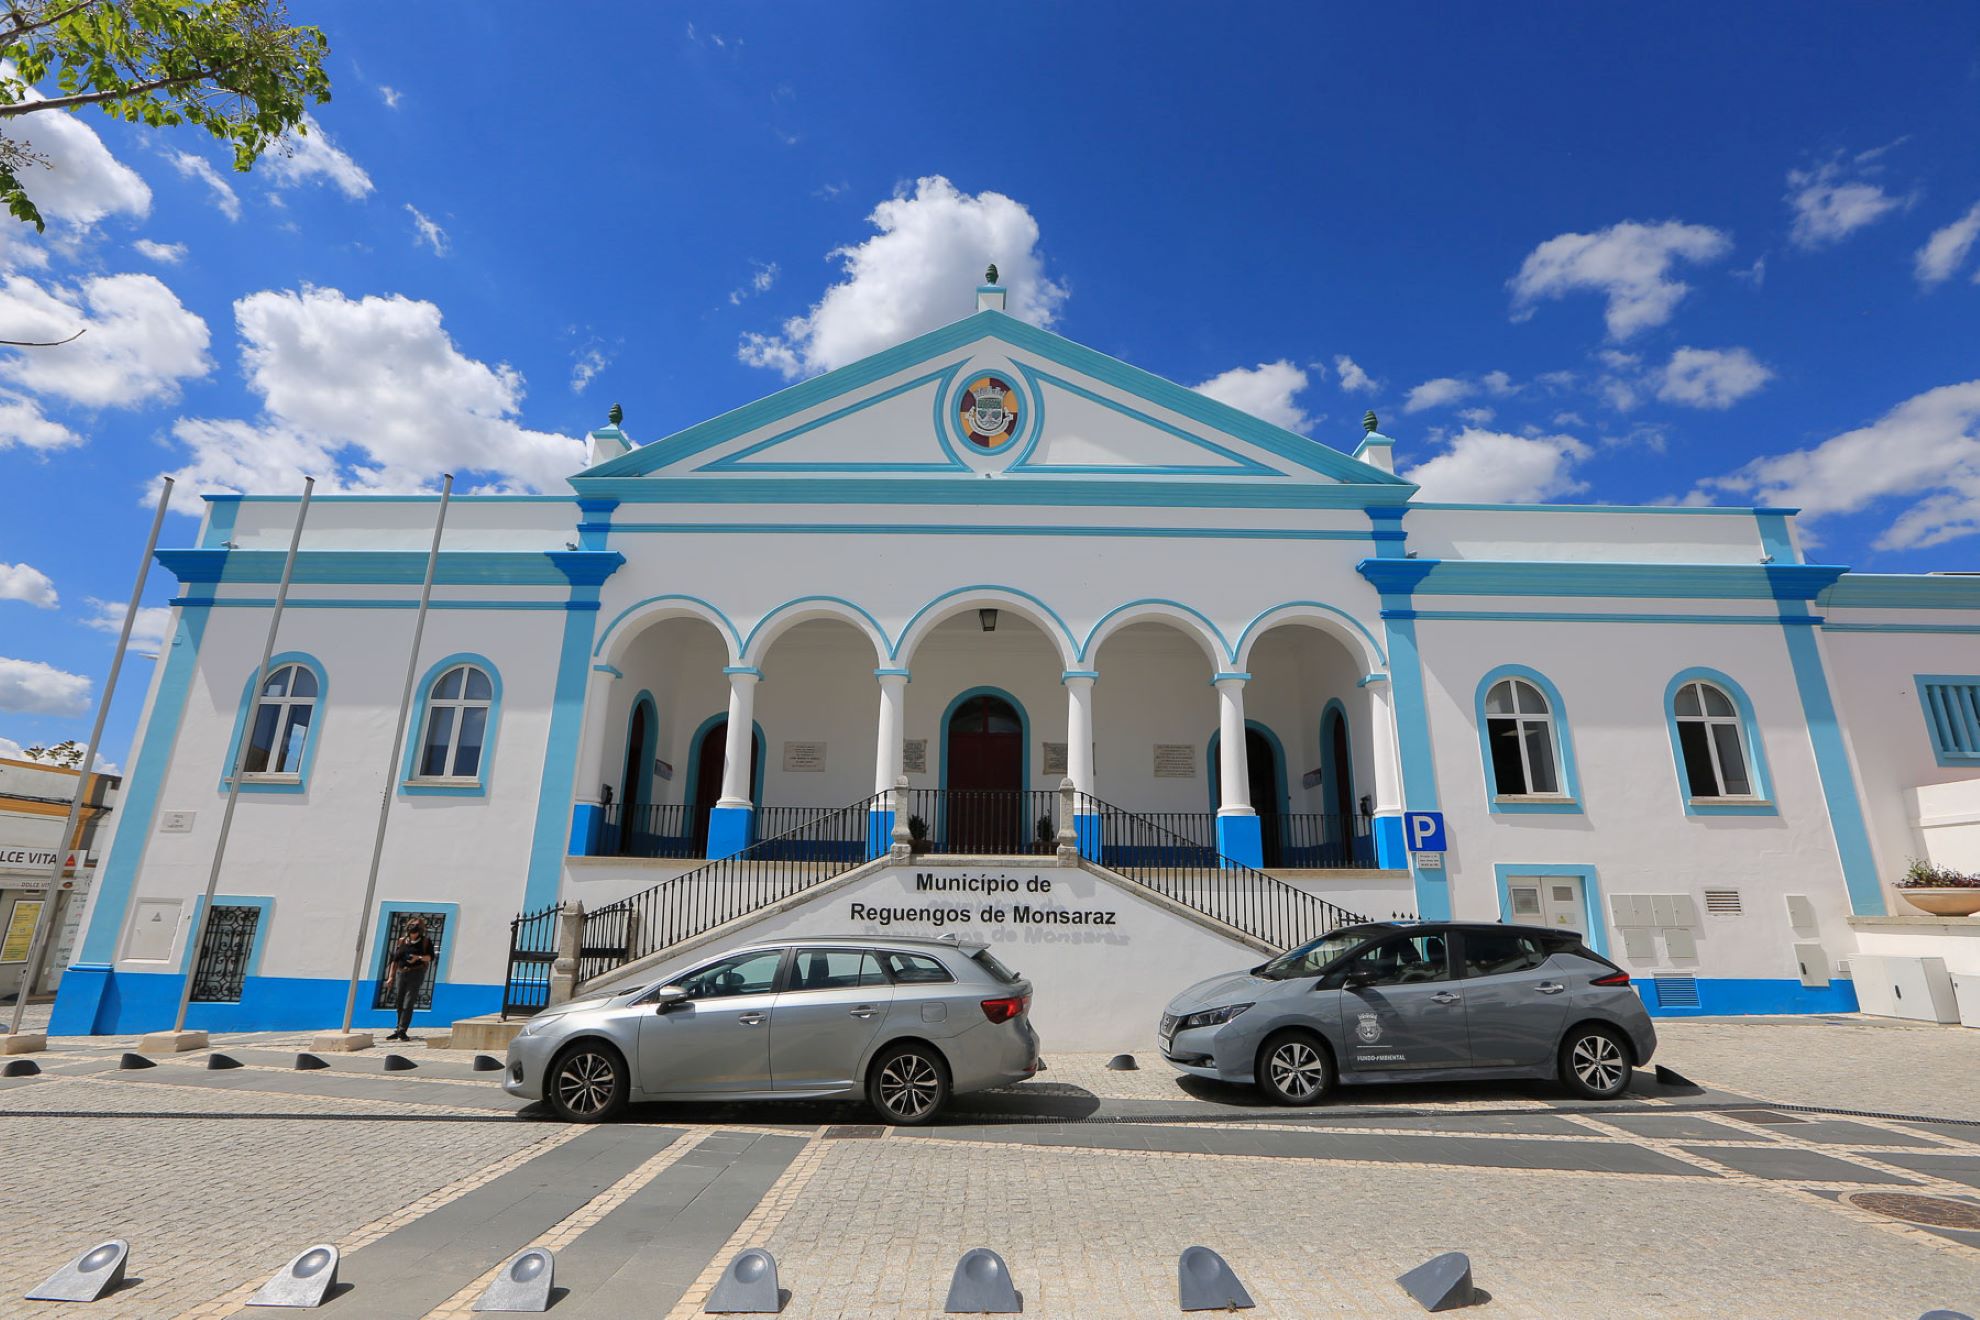 Estrutura Residencial para Idosos, Centro de Dia e Serviço Domiciliário de Perolivas recebeu o visto do Tribunal de Contas